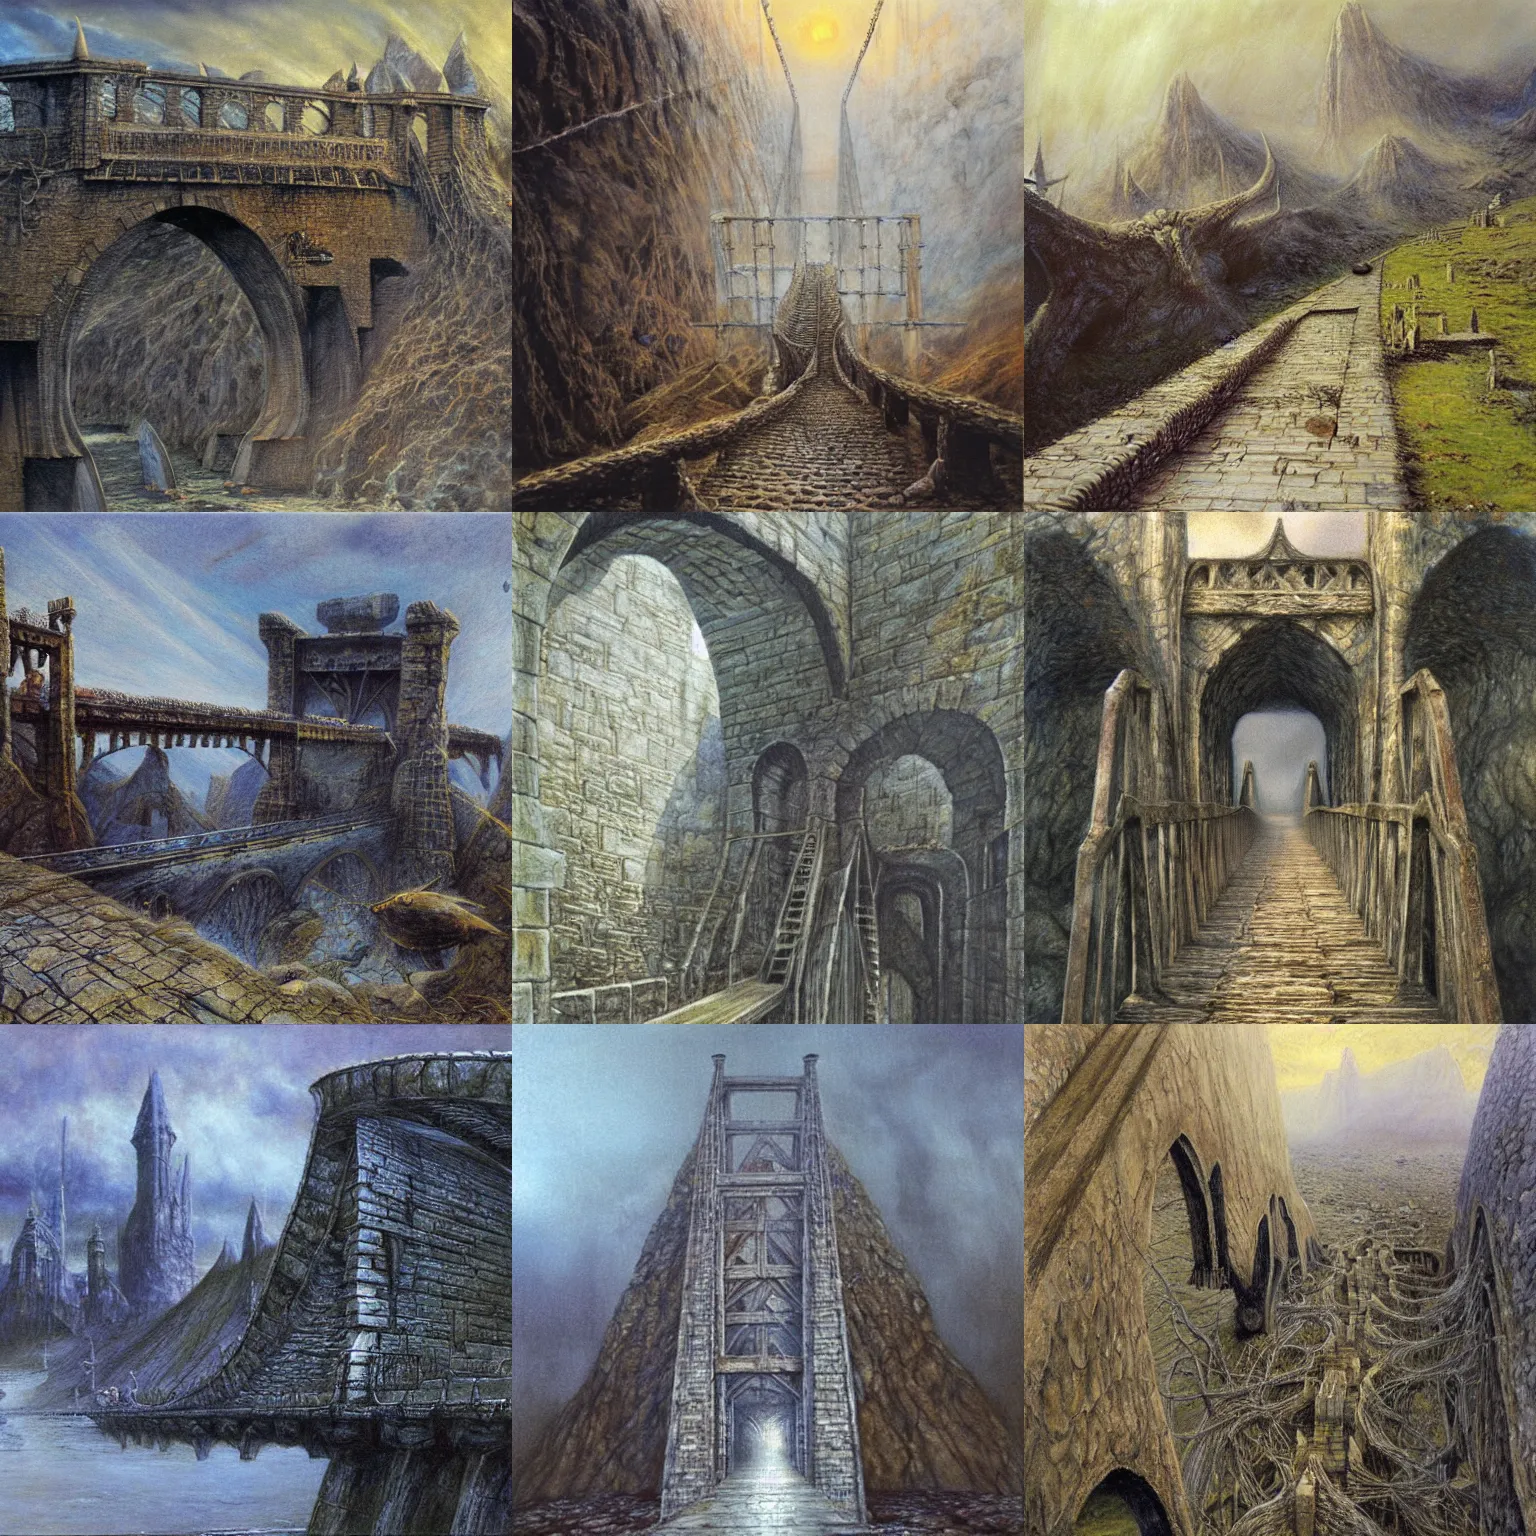 The Bridge of Khazad-dûm 